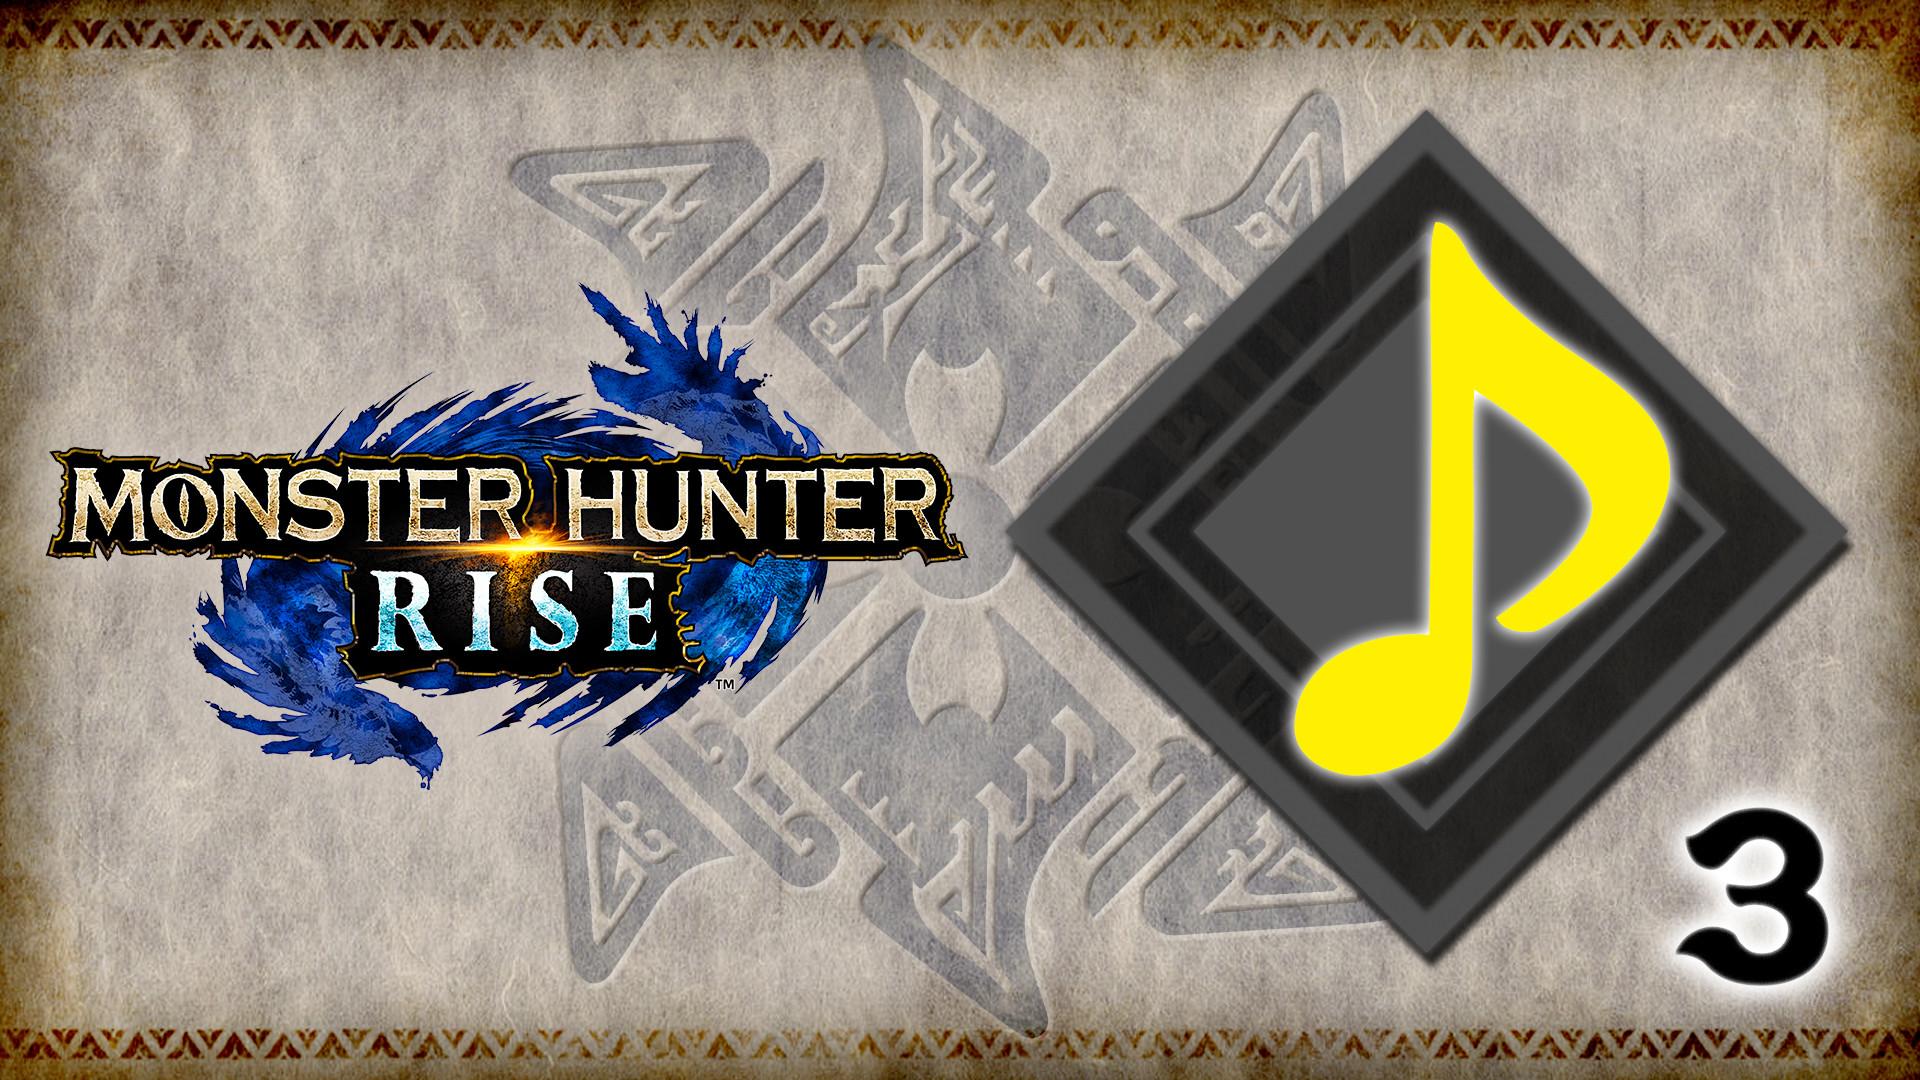 MONSTER HUNTER RISE - &quot;Monster Hunter Series Bases&quot; BGM